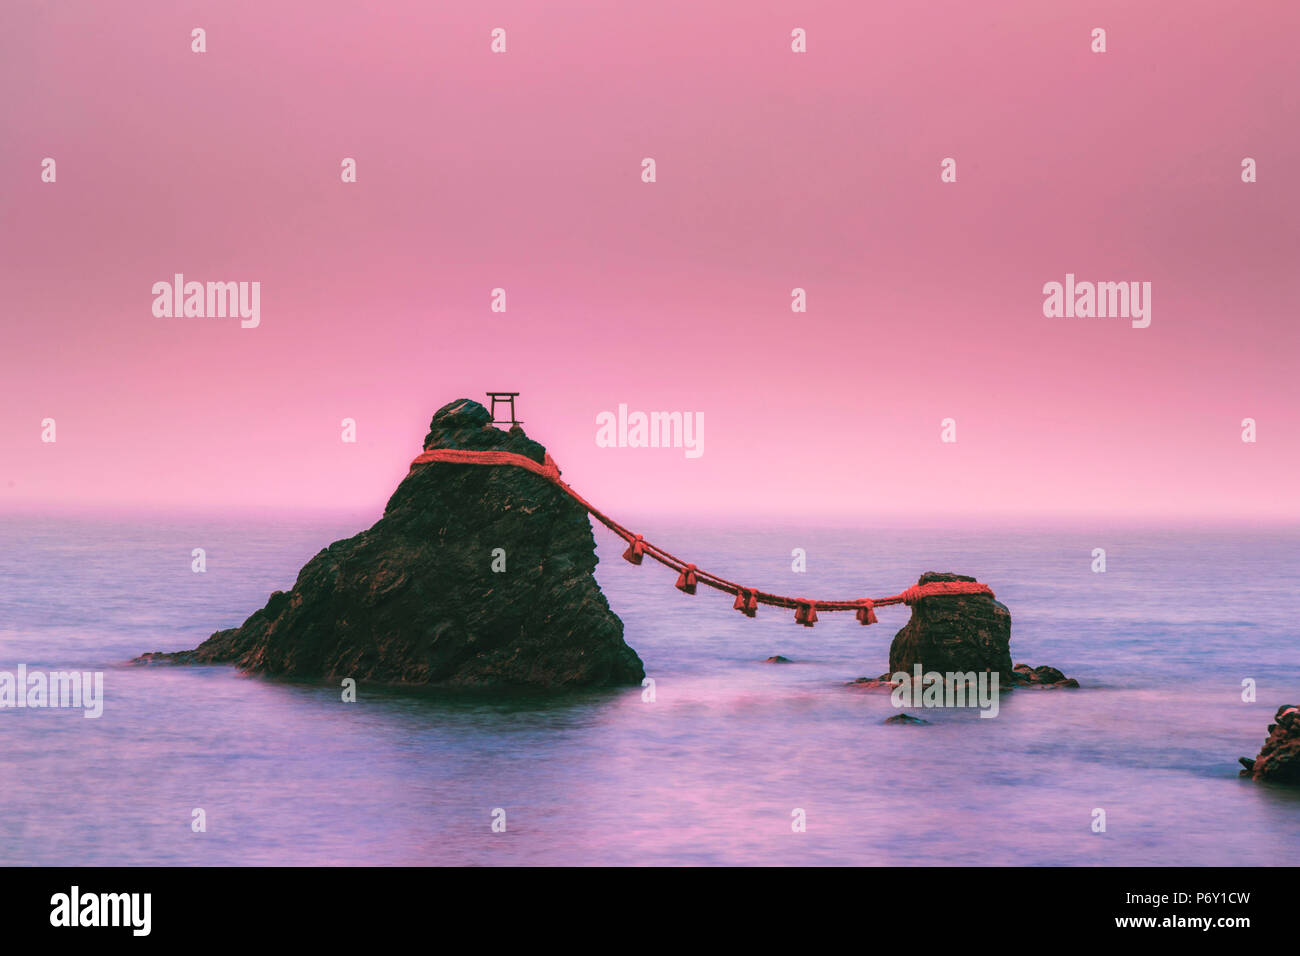 Japan, Präfektur Mie, Futami, wedded Meoto-Iwa (Felsen) vor der Küste von Okiyama Schrein, verehrt als Darstellungen von Izanagi und Izanami, die zwei Götter, die Japan erstellt. Stockfoto